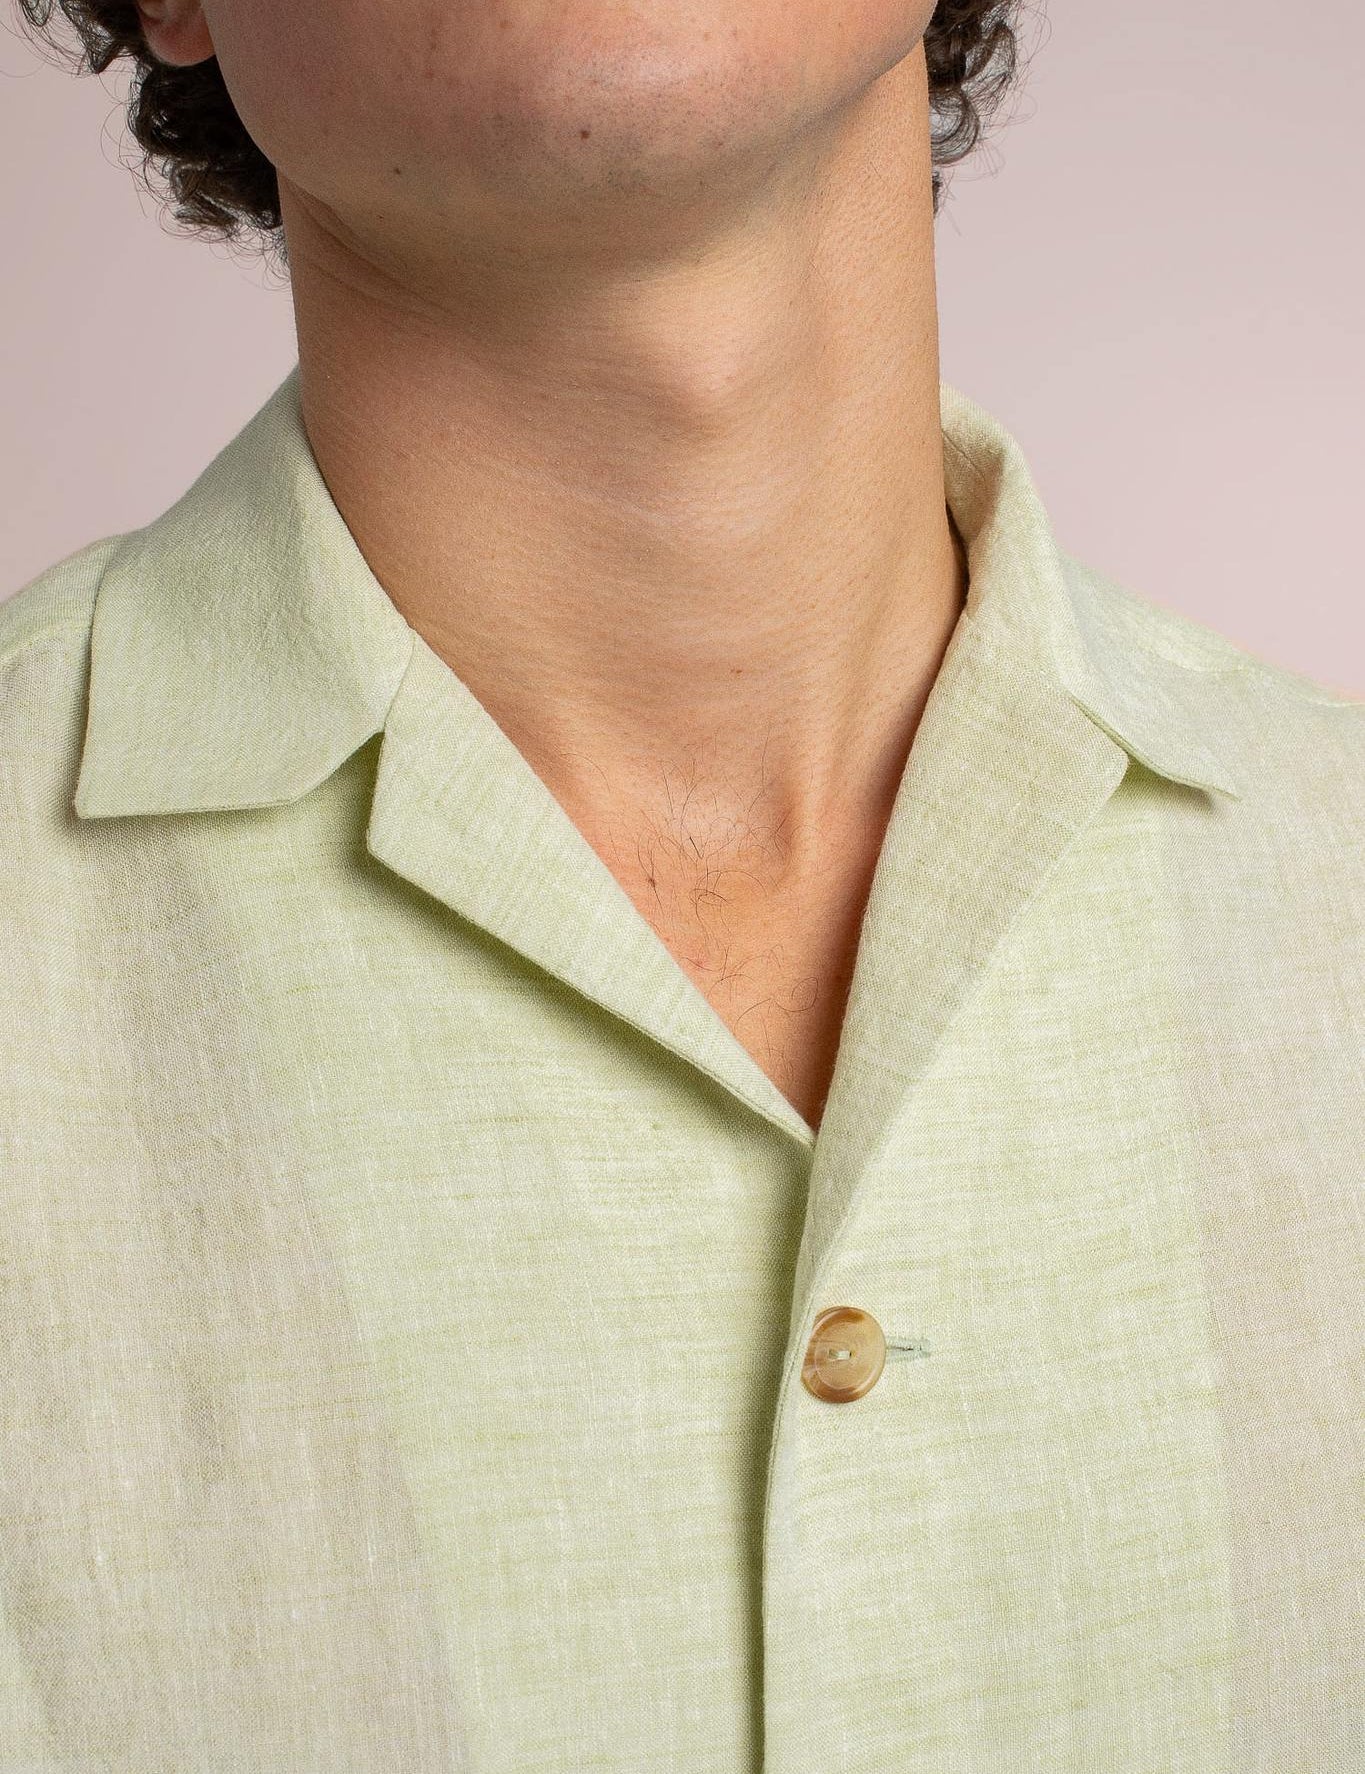 velos-casual-linen-overshirt-collar-details_20a5b9e2-a980-453c-b41d-380249f7d07a.jpg